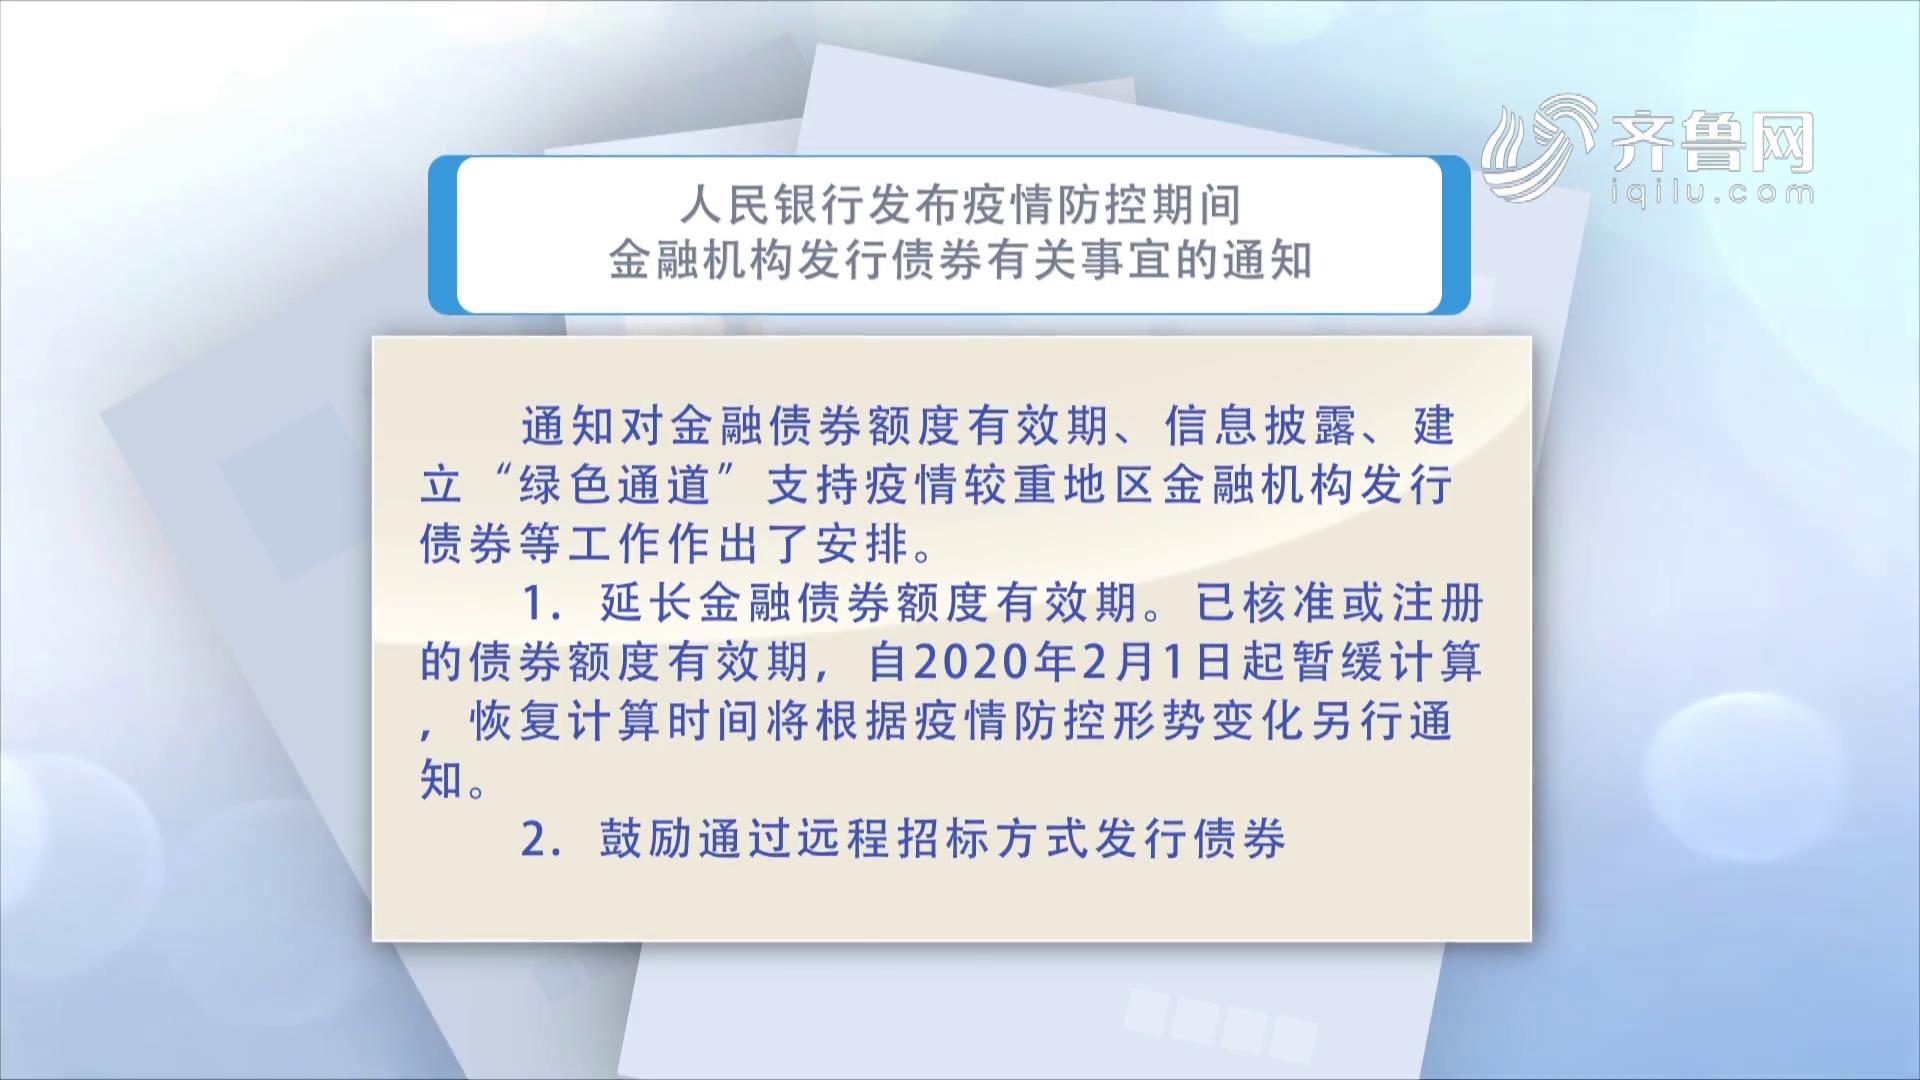 中国人民银行金融市场司发布关于疫情防控期间金融机构发行债券有关事宜的通知《齐鲁金融》20200219播出